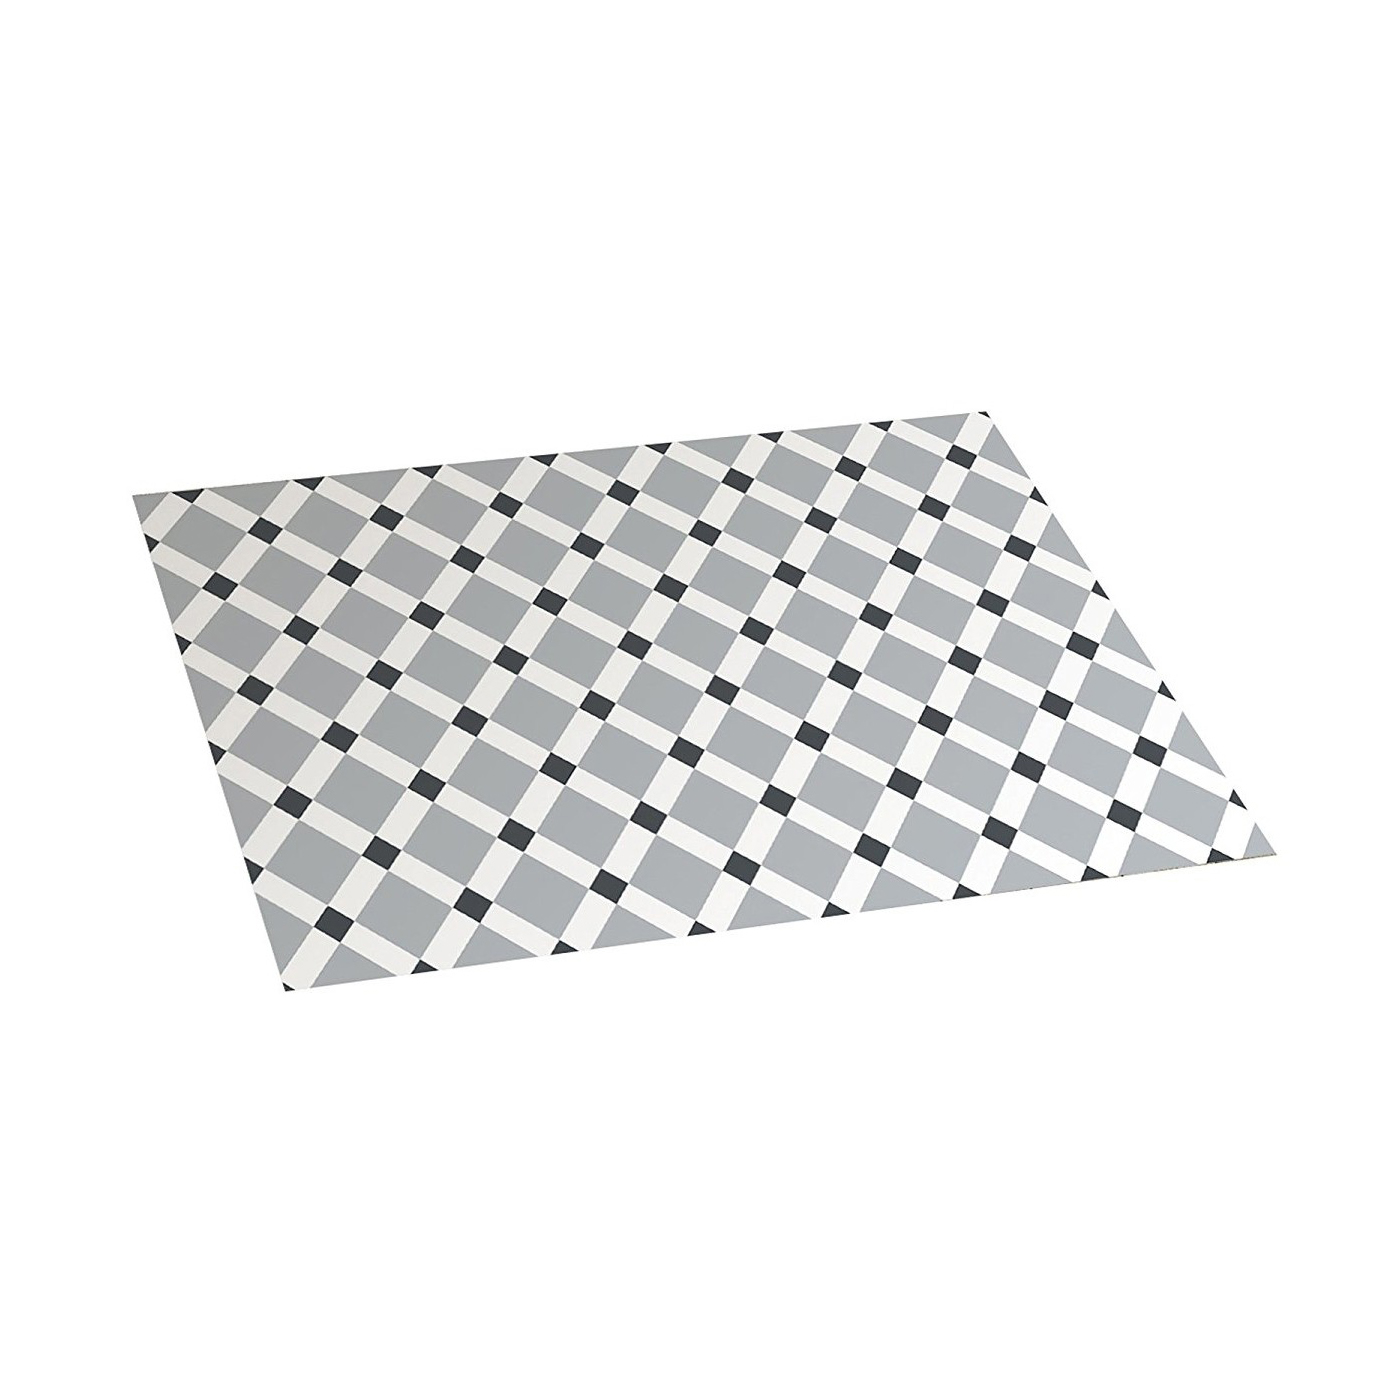 Tappeto vinilico 45 x 75 cm con fondo antiscivolo croma gres bianco grigio pvc